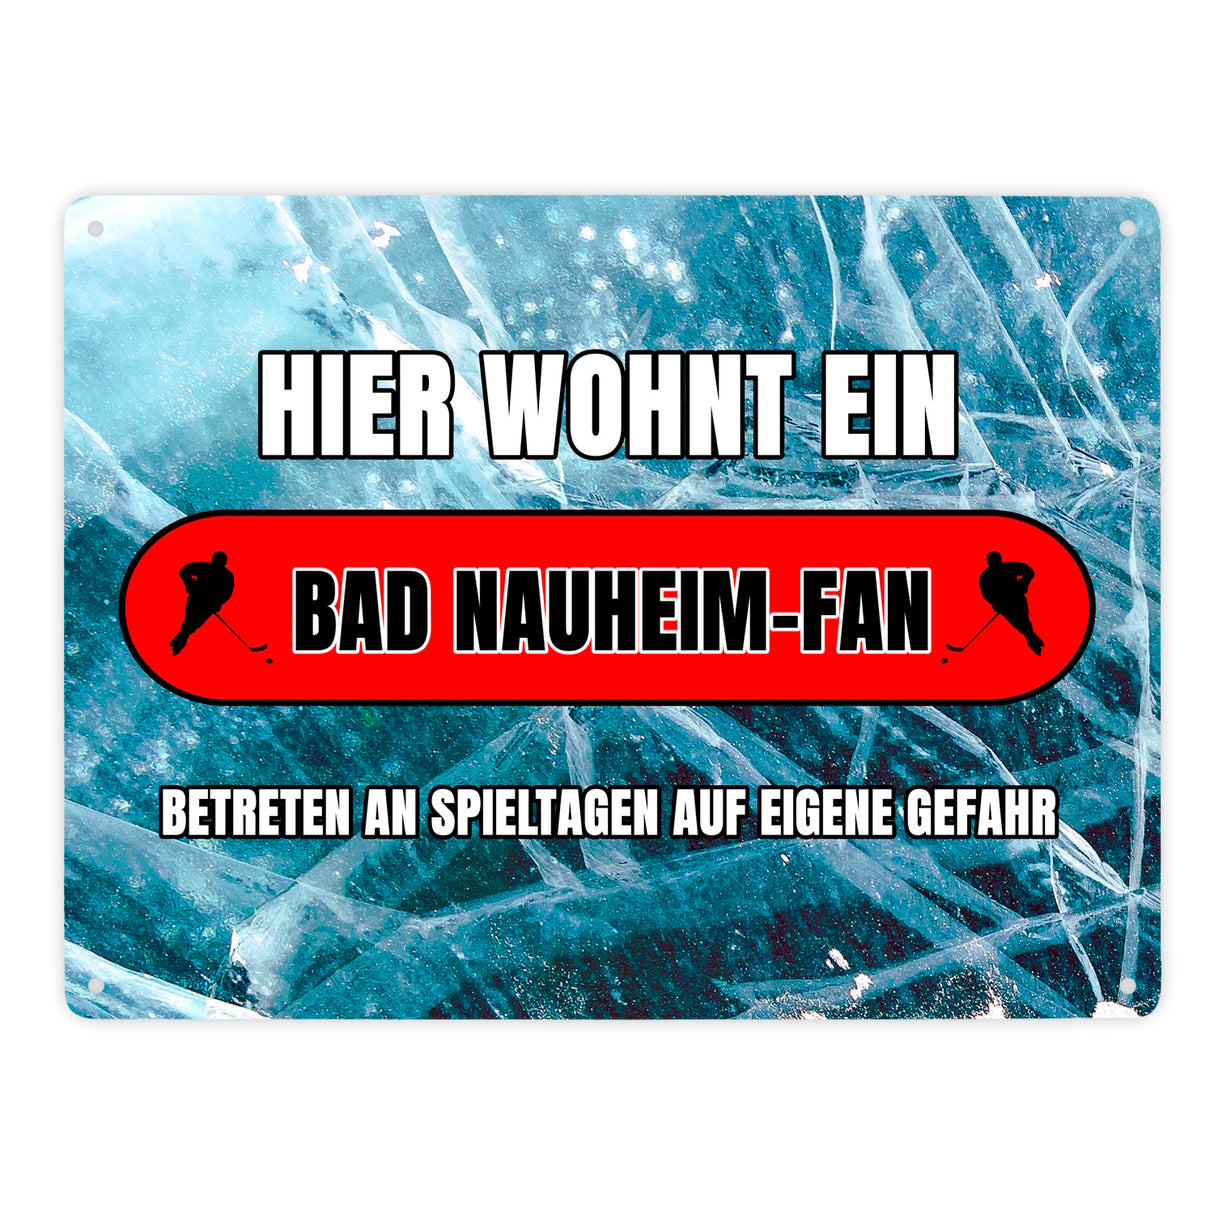 Hier wohnt ein Bad Nauheim-Fan Metallschild in 15x20 cm mit Eishallen Boden-Motiv